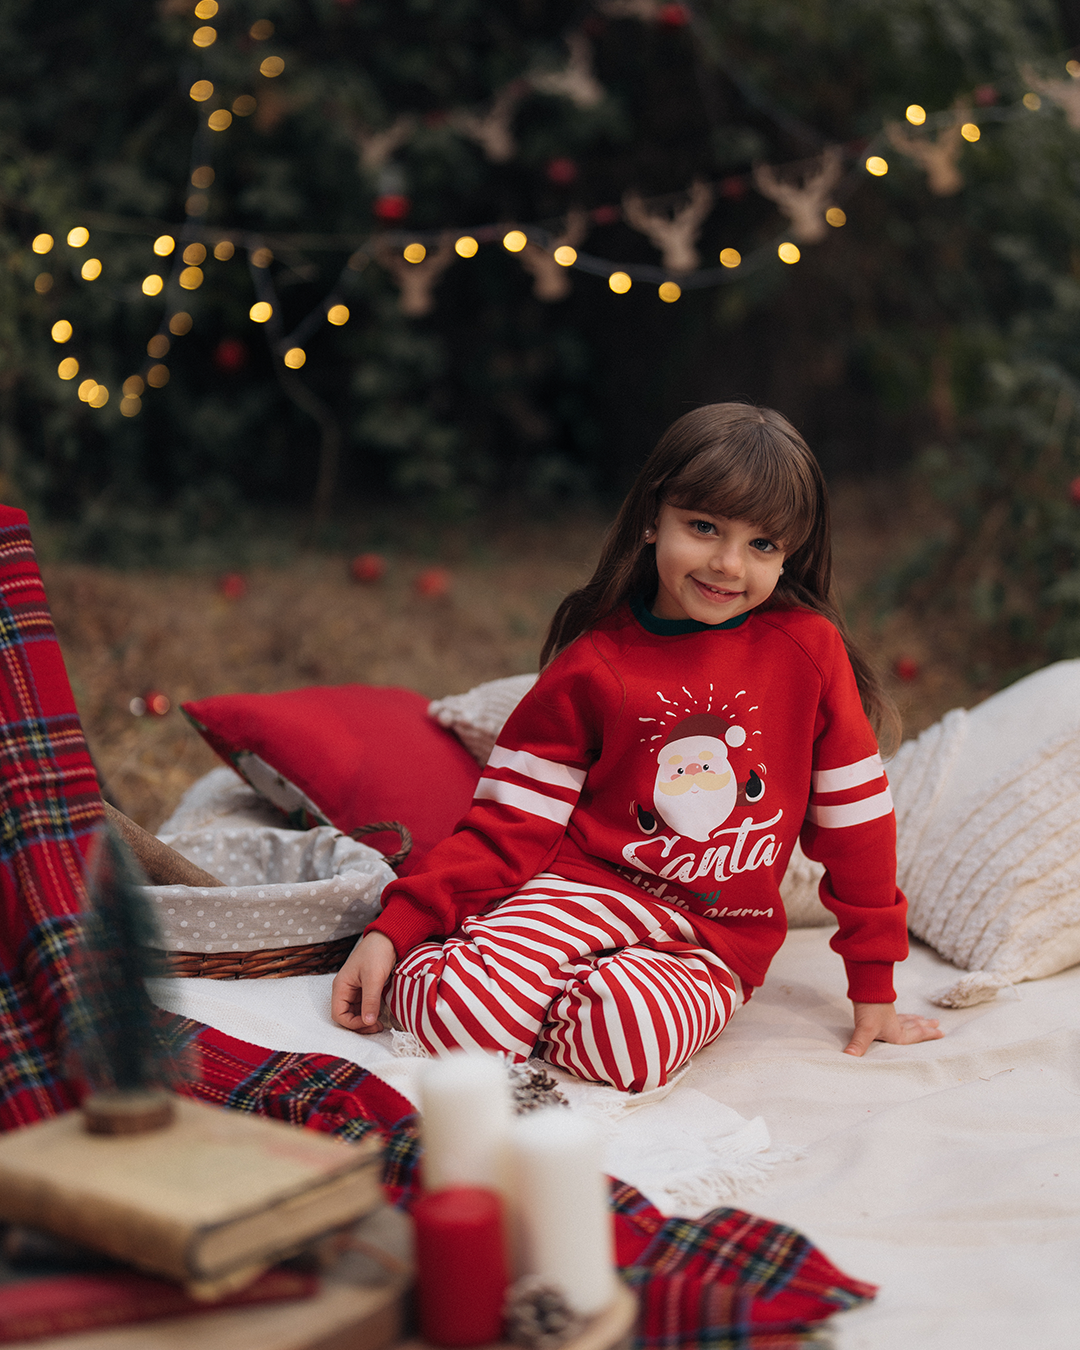 Santa is my holiday alarm My kids Christmas pajamas